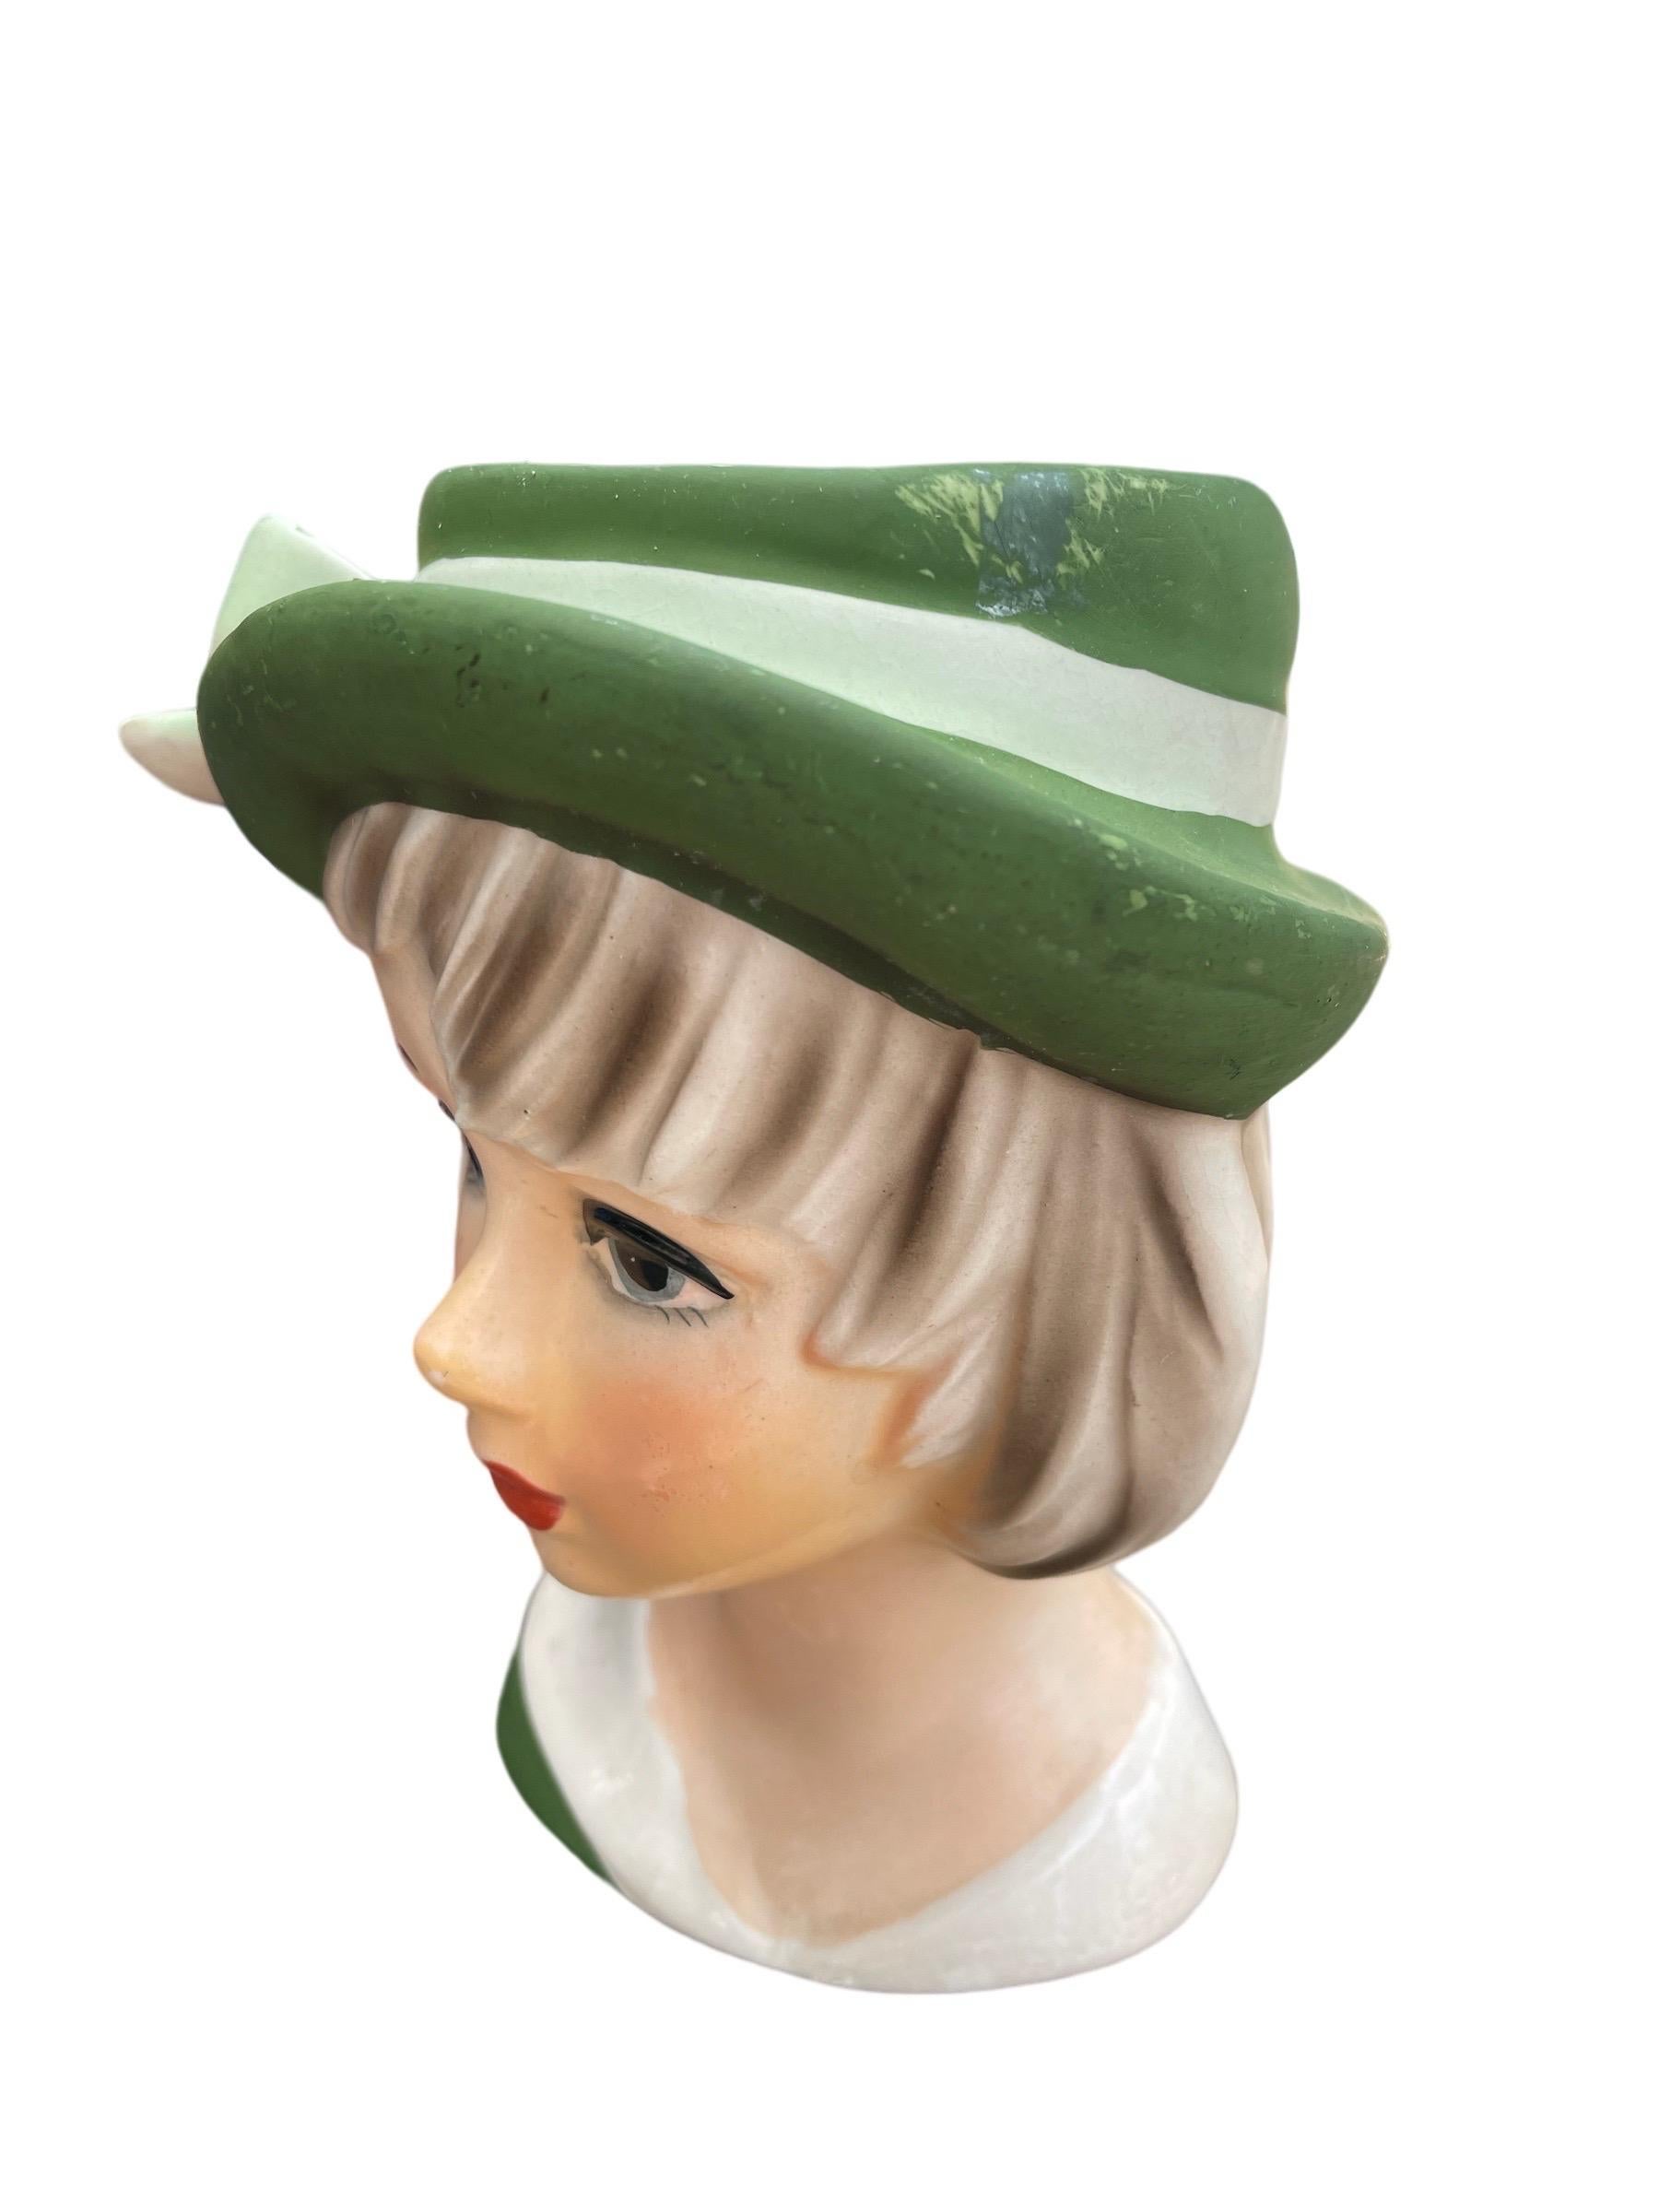 1940er Jahre Lady Head Vase 

1940er Jahre Frauenkopfvase mit grünem Hut und Schleife

Etikett mit Relpo Japan auf der Unterseite

Leichter Farbabrieb auf der Hutoberseite und auf der Nase. Weitere Informationen finden Sie in den Fotos und Videos.